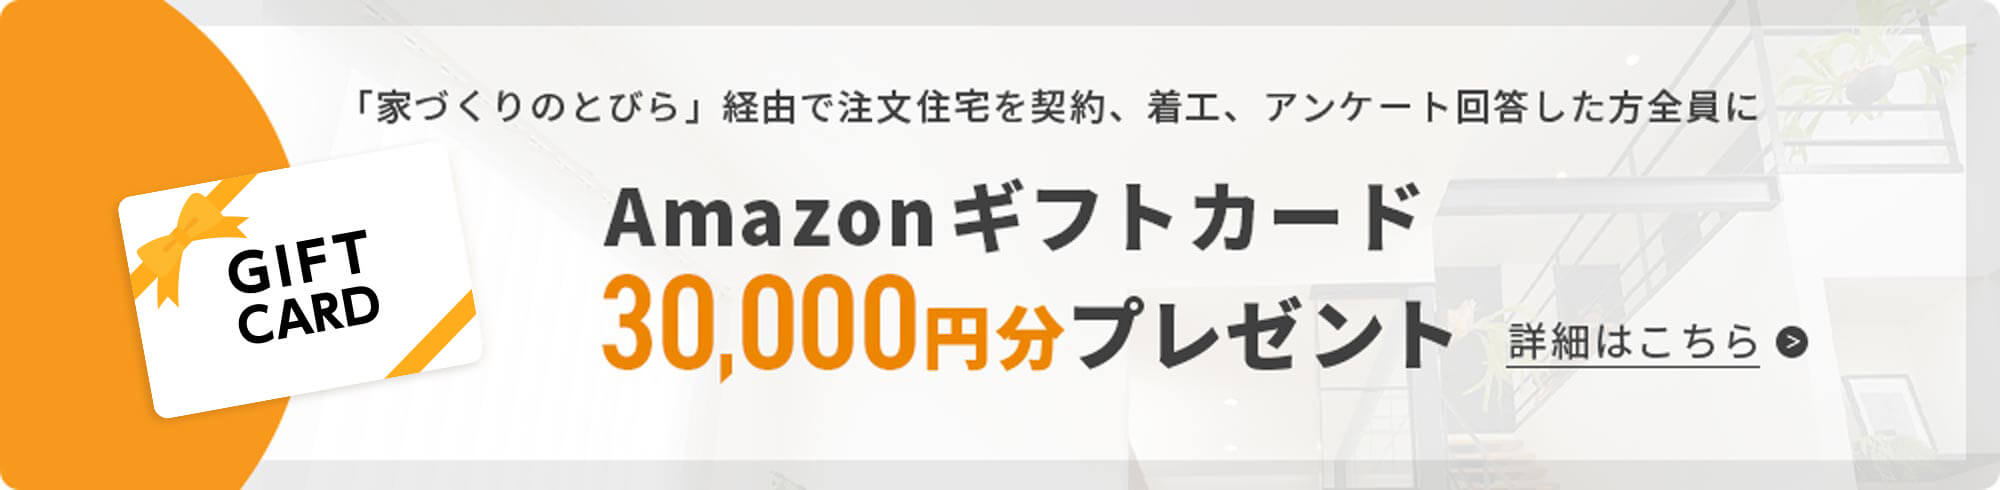 Amazonギフトカード30,000円分プレゼント